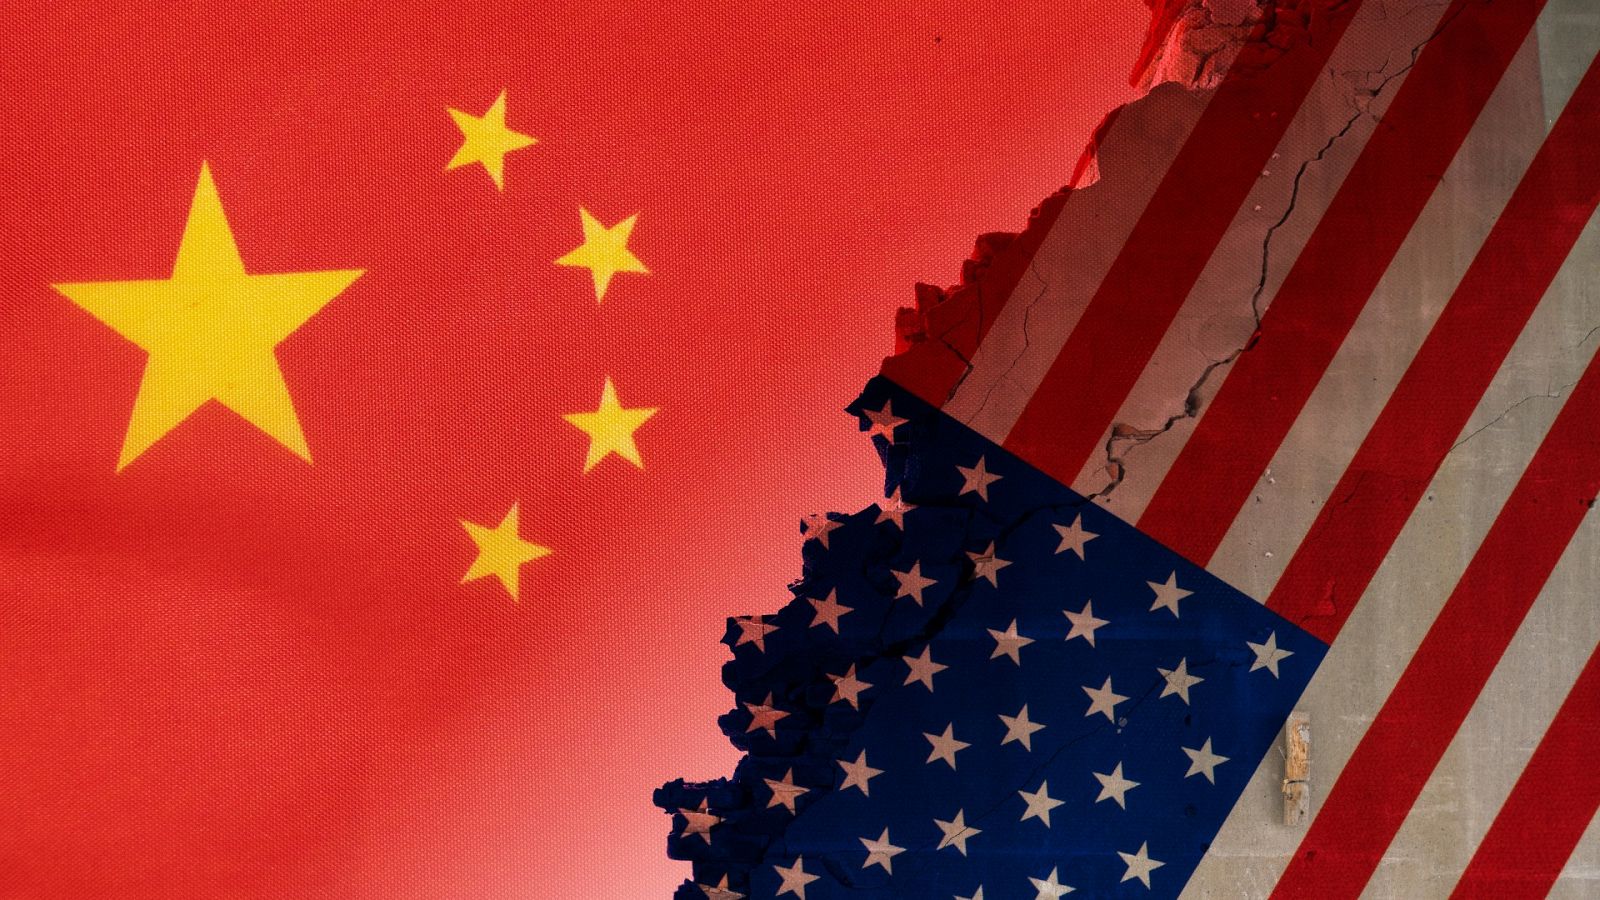 Cumbre de Singapur: Fricciones de China y EE.UU. por la hegemonía